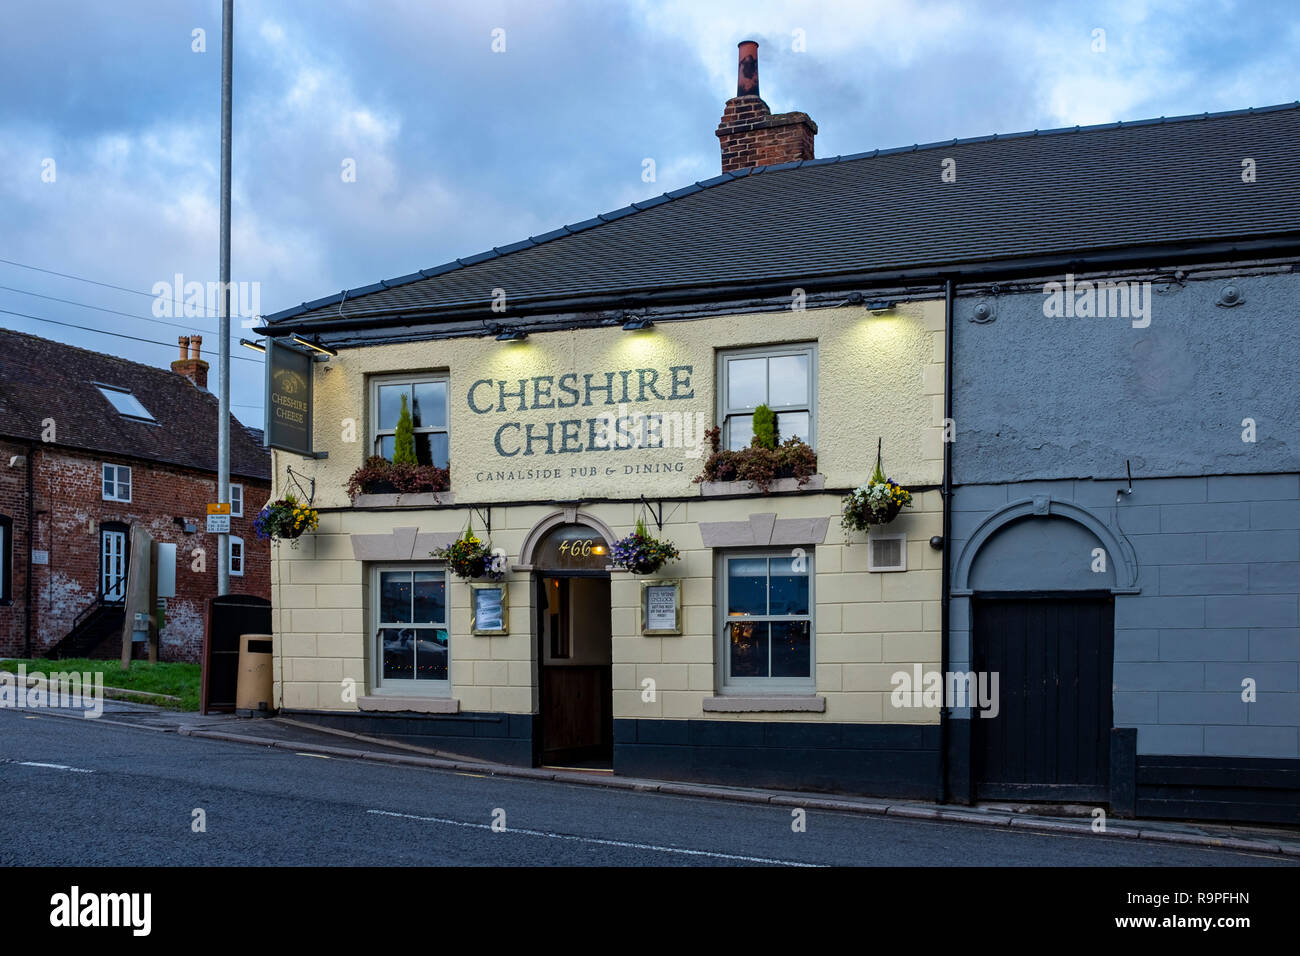 Cheese House Cheshire